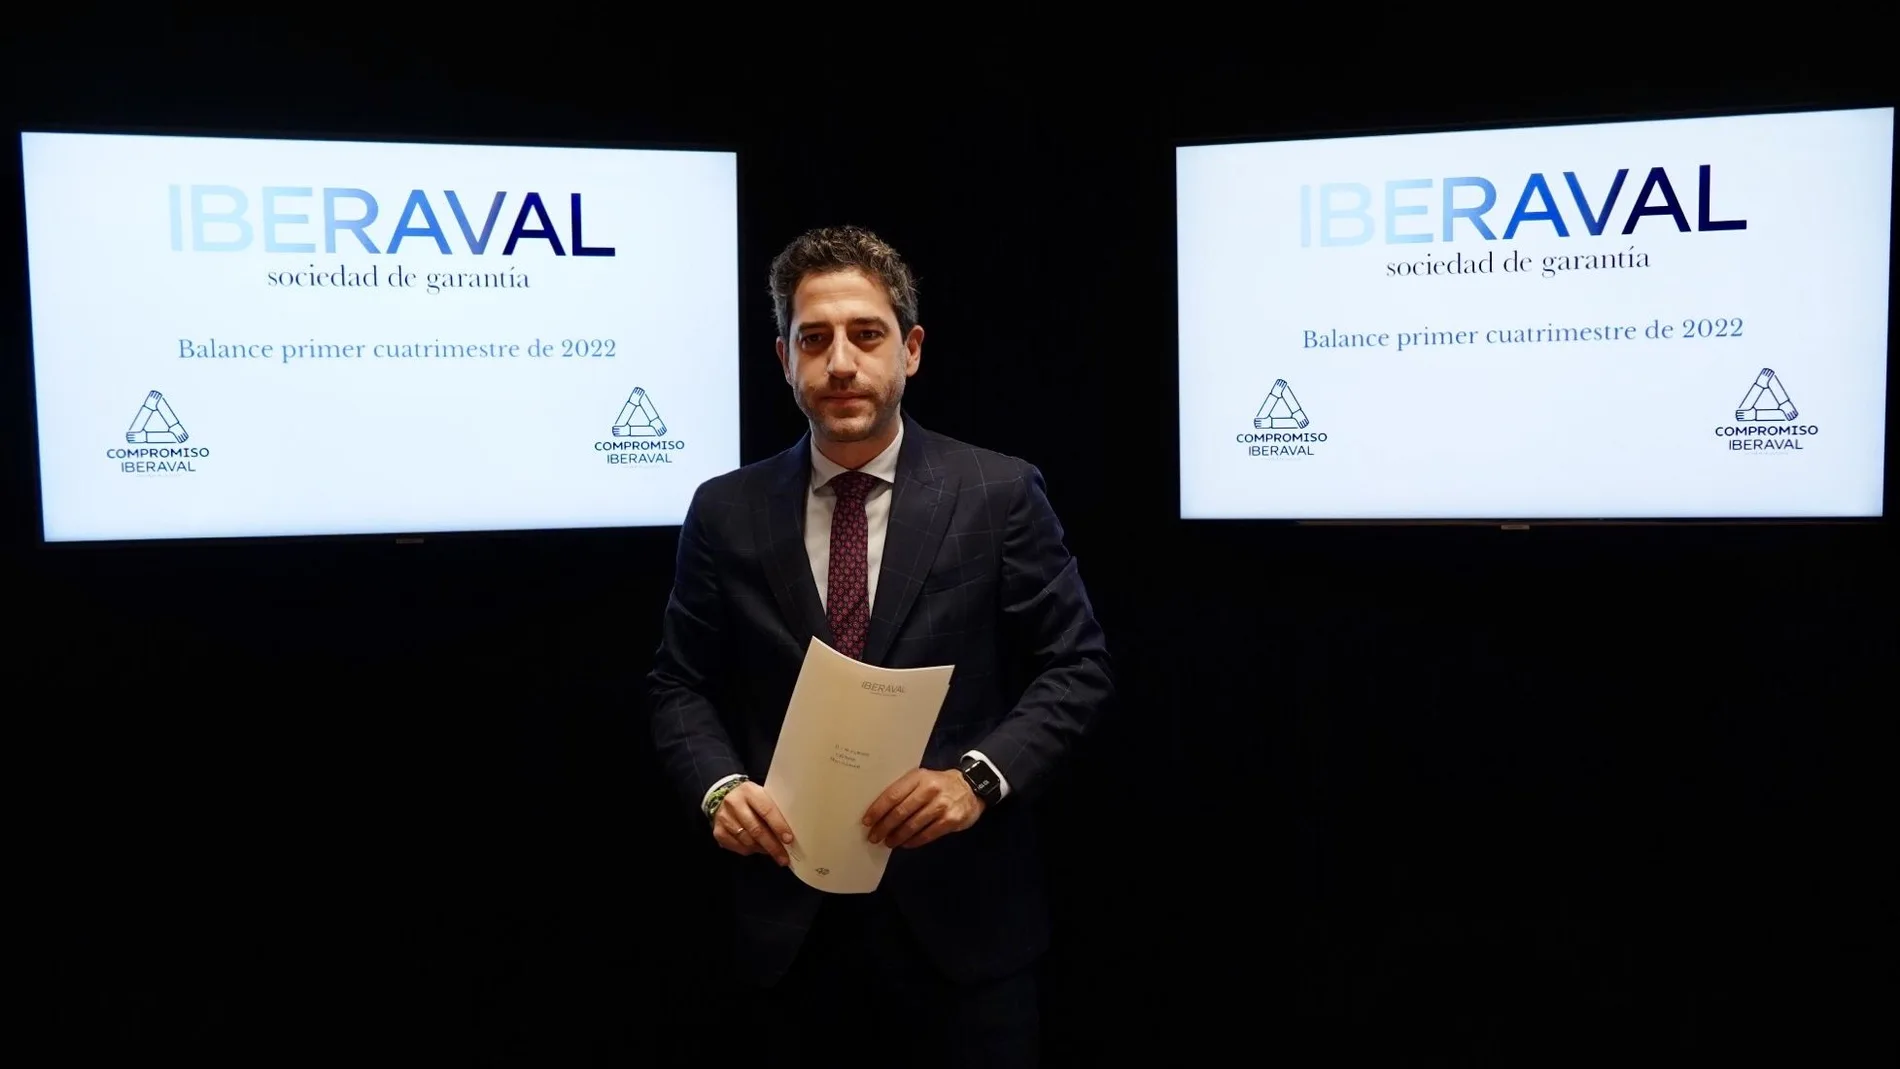 El presidente del Consejo de Administración de Iberaval, César Pontvianne, informa sobre la actividad de la sociedad de garantía durante el primer cuatrimestre de 2022.